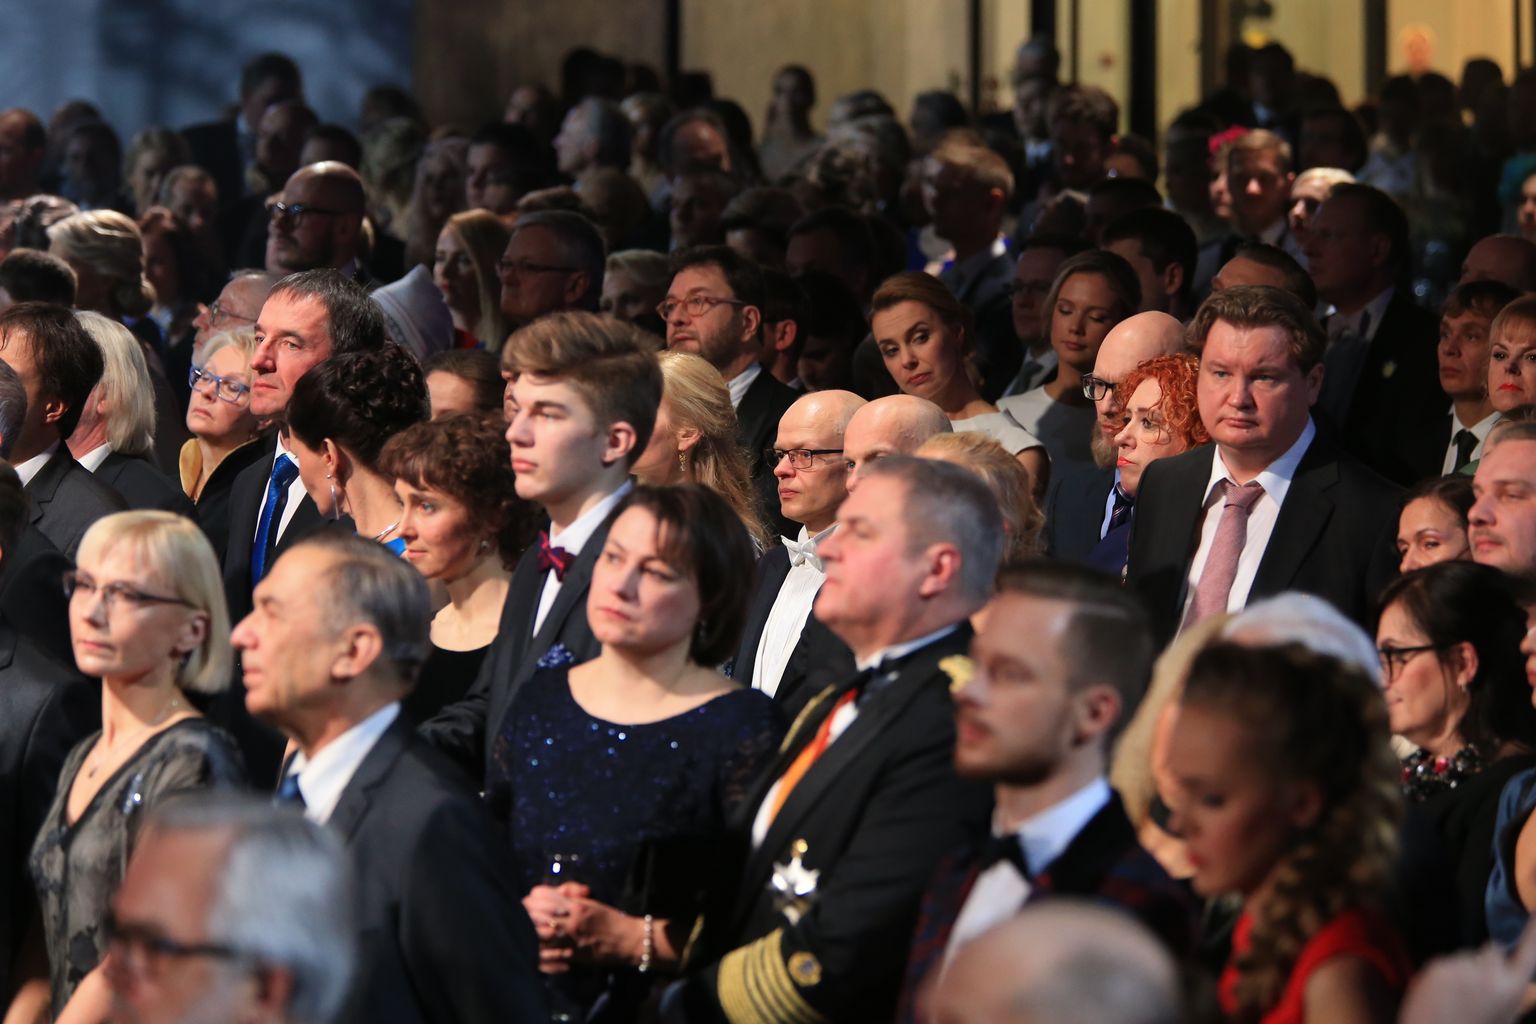 Presidendi vabariigi aastapäeva kõne ja kontsert Eesti Rahva Muuseumis.